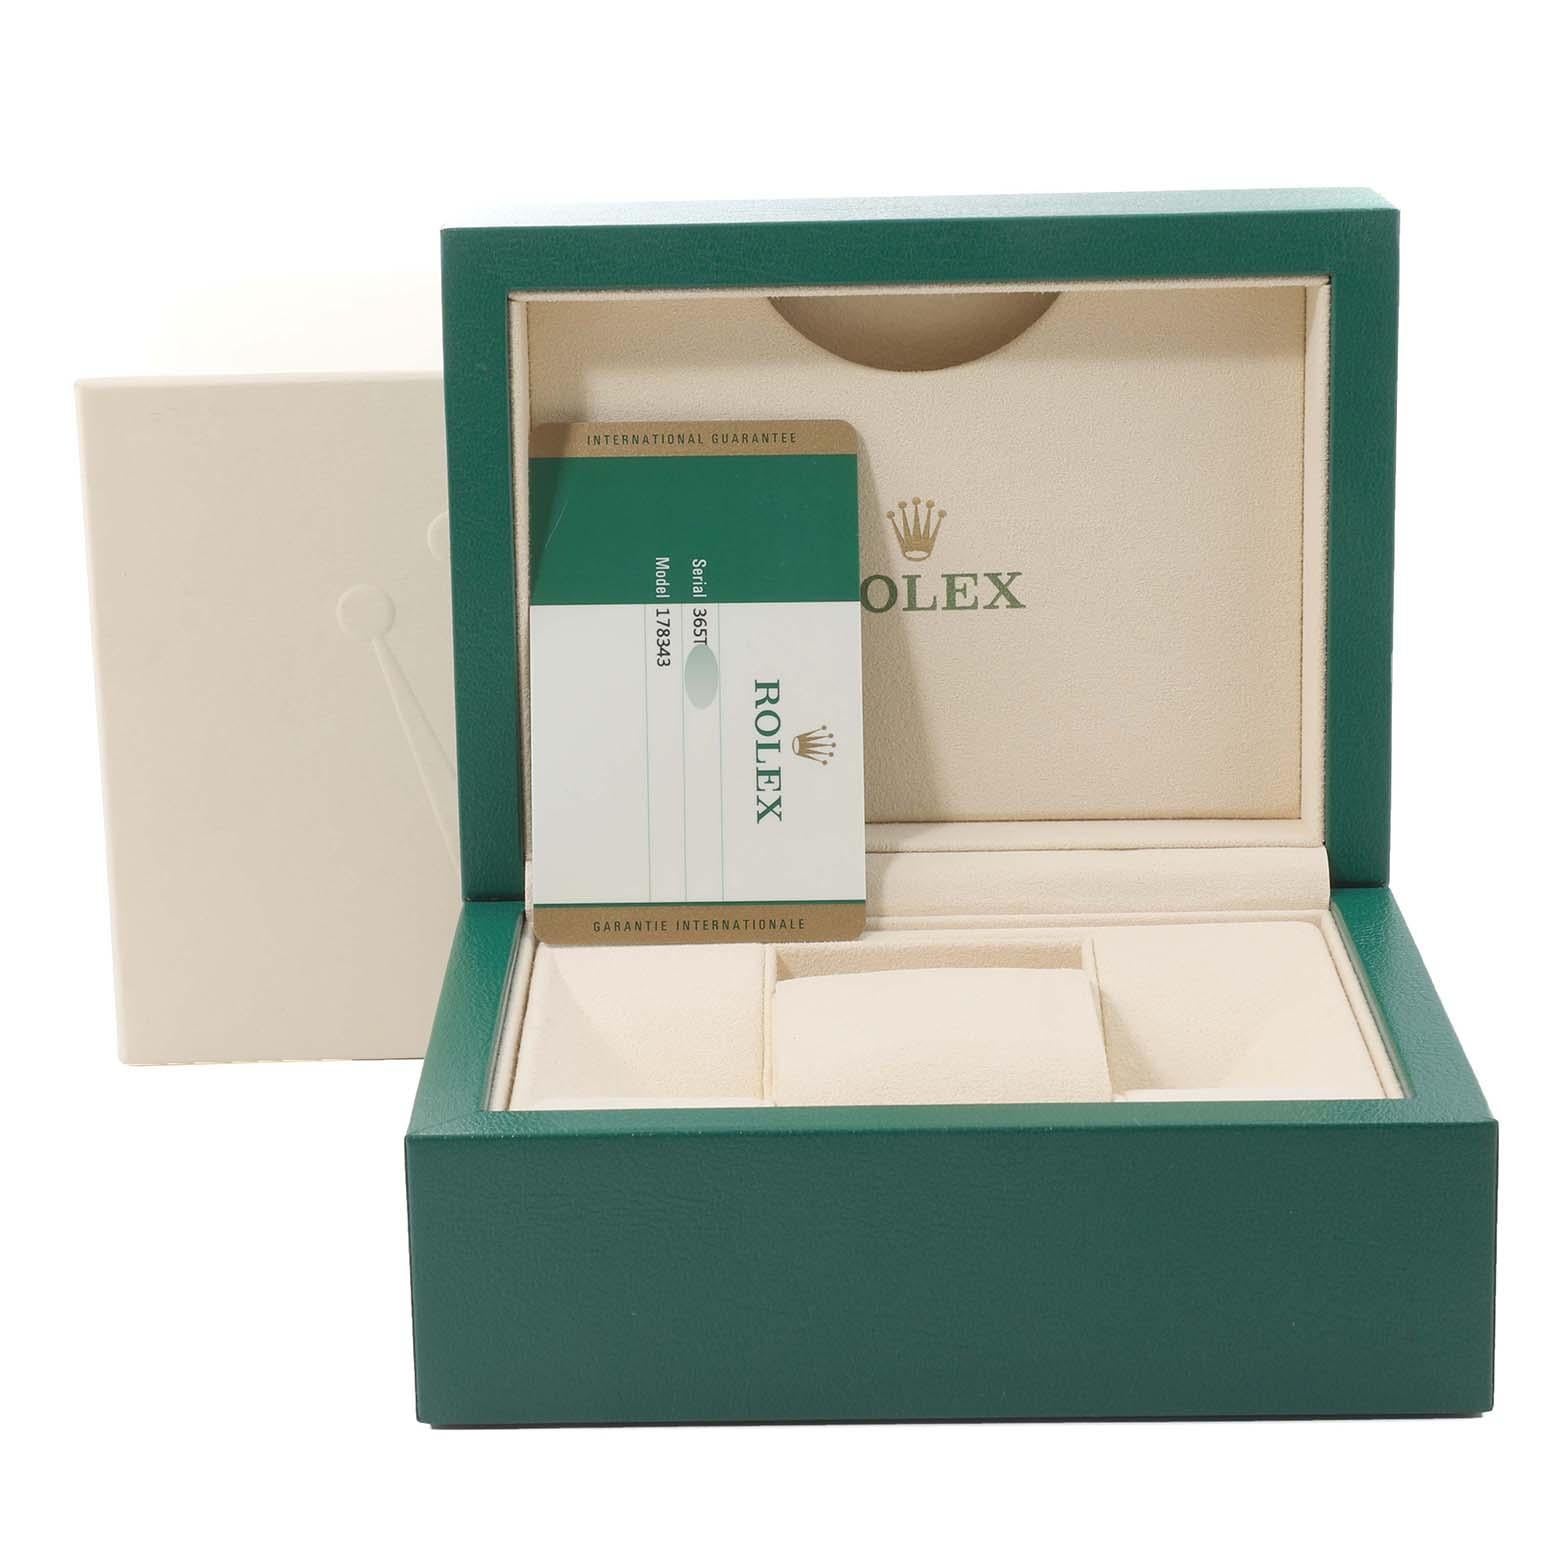 Rolex Montre Datejust de taille moyenne en acier, or jaune et diamants, pour femmes 178343, avec carte boîte 8